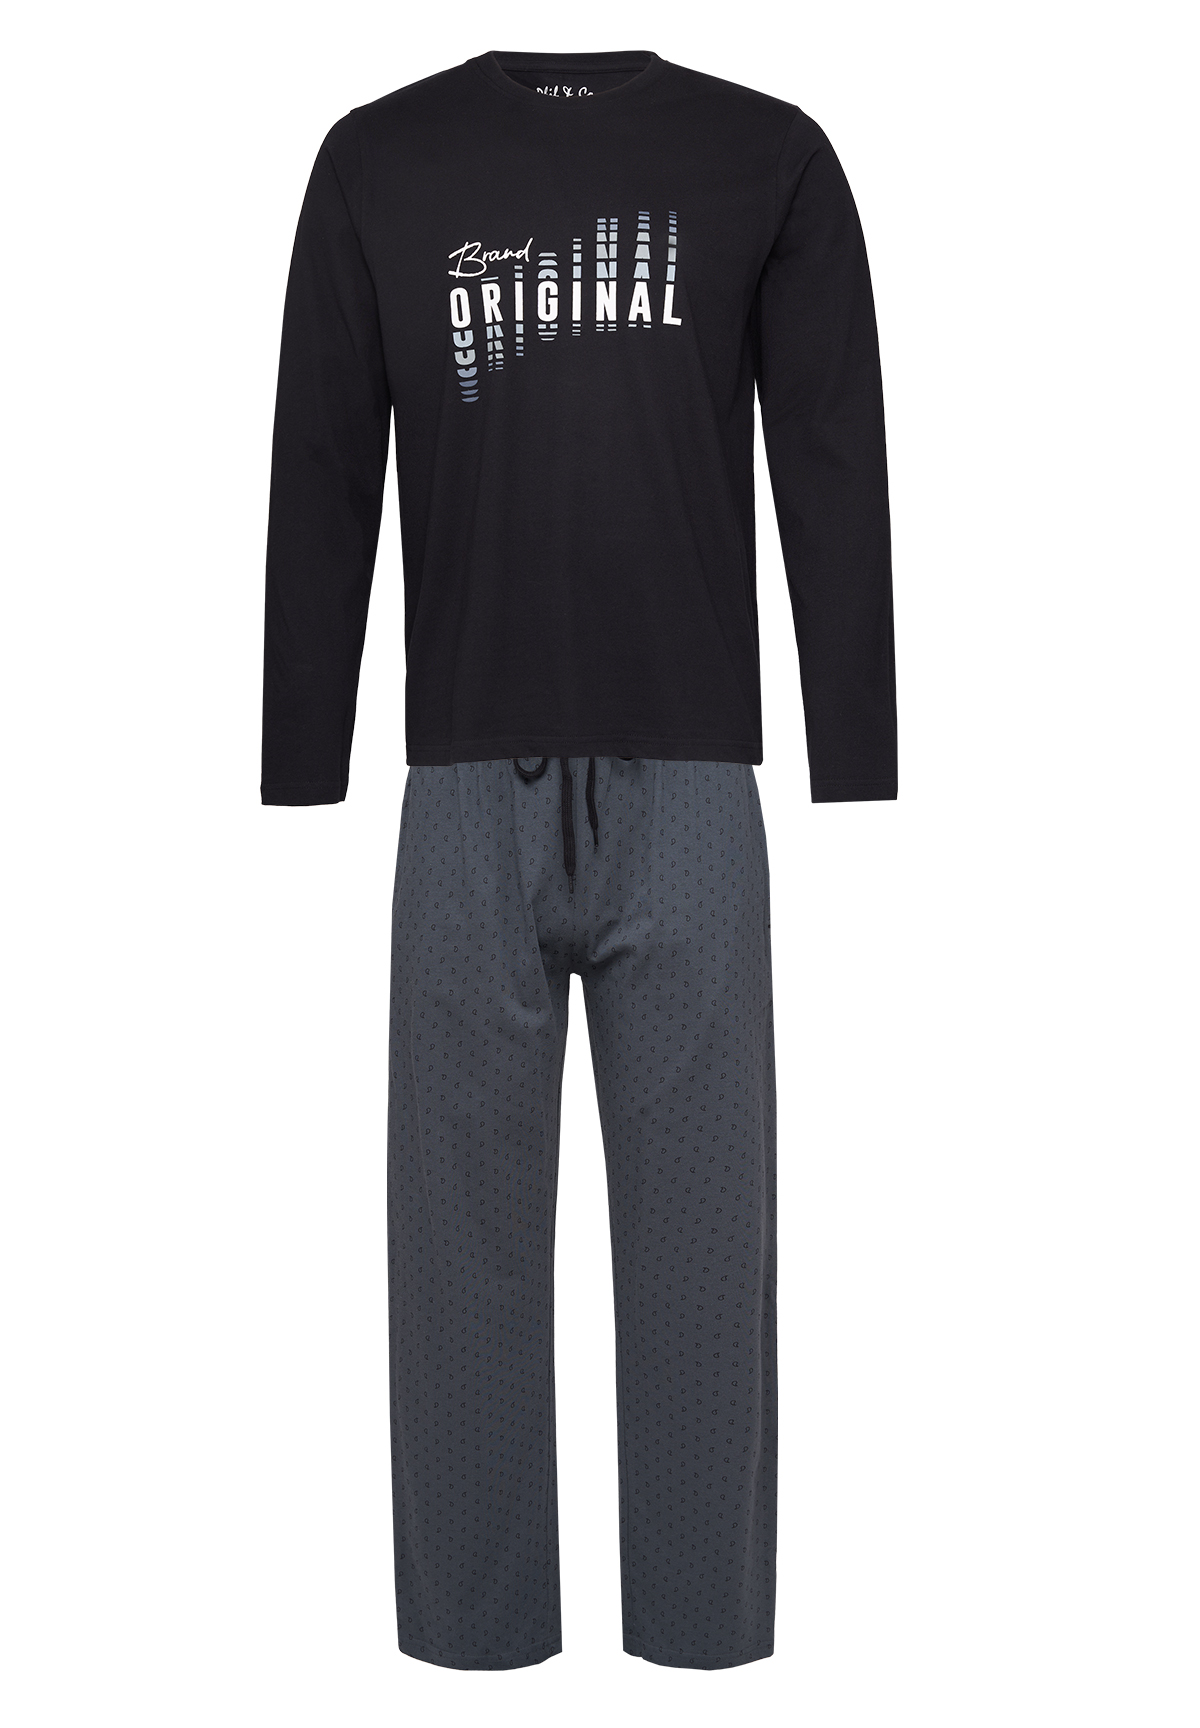 Afbeelding van Phil & Co Lange heren winter pyjama set katoen brand original /grijs